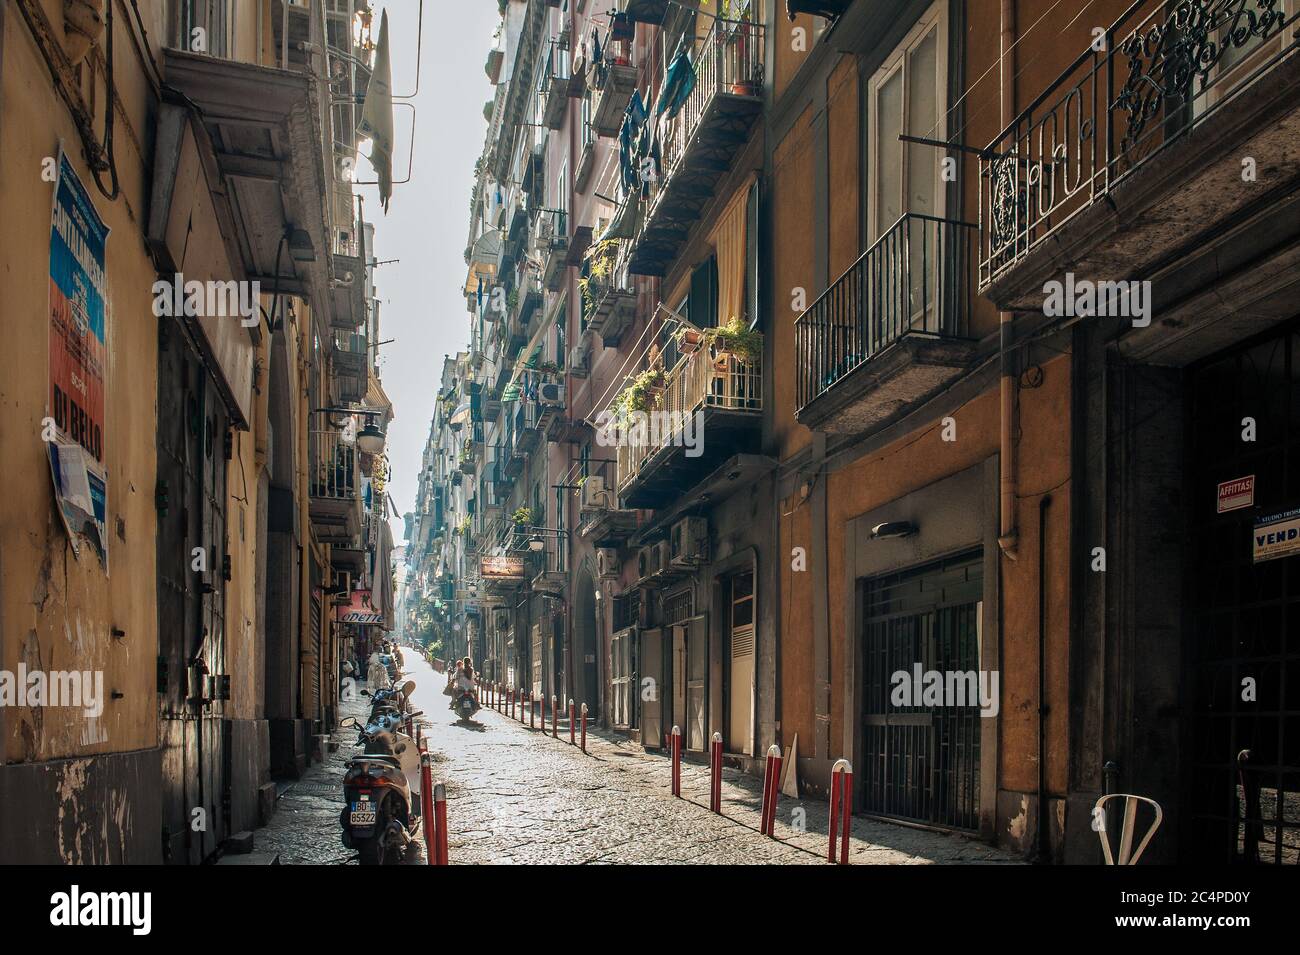 Moto en un callejón en el centro de la ciudad de Nápoles. Esta zona pertenece a un lugar declarado Patrimonio de la Humanidad por la UNESCO como parte del centro histórico de la ciudad de Nápoles. Foto de stock